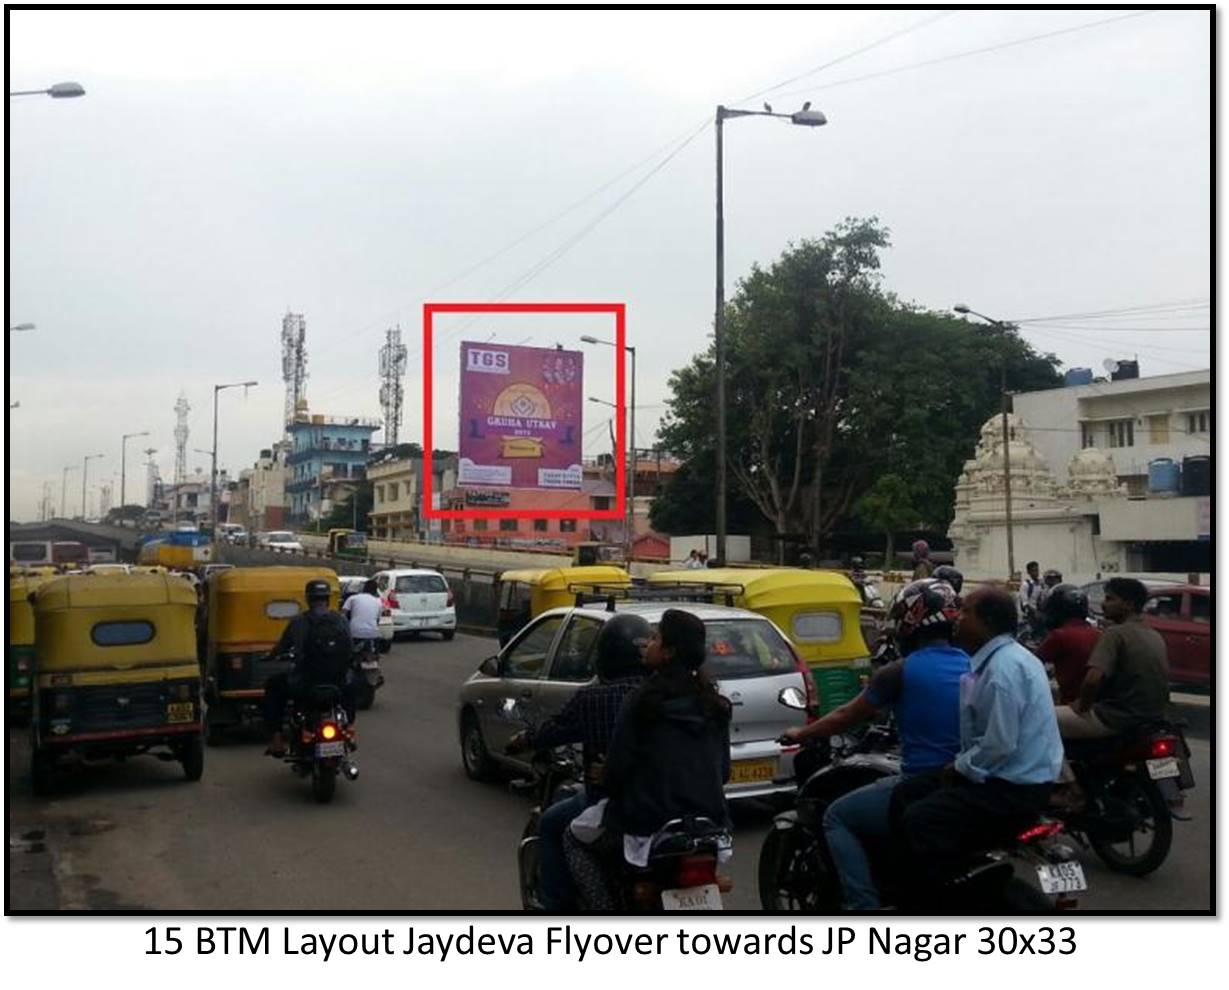 BTM Layout Jaydeva Flyover, Bengaluru